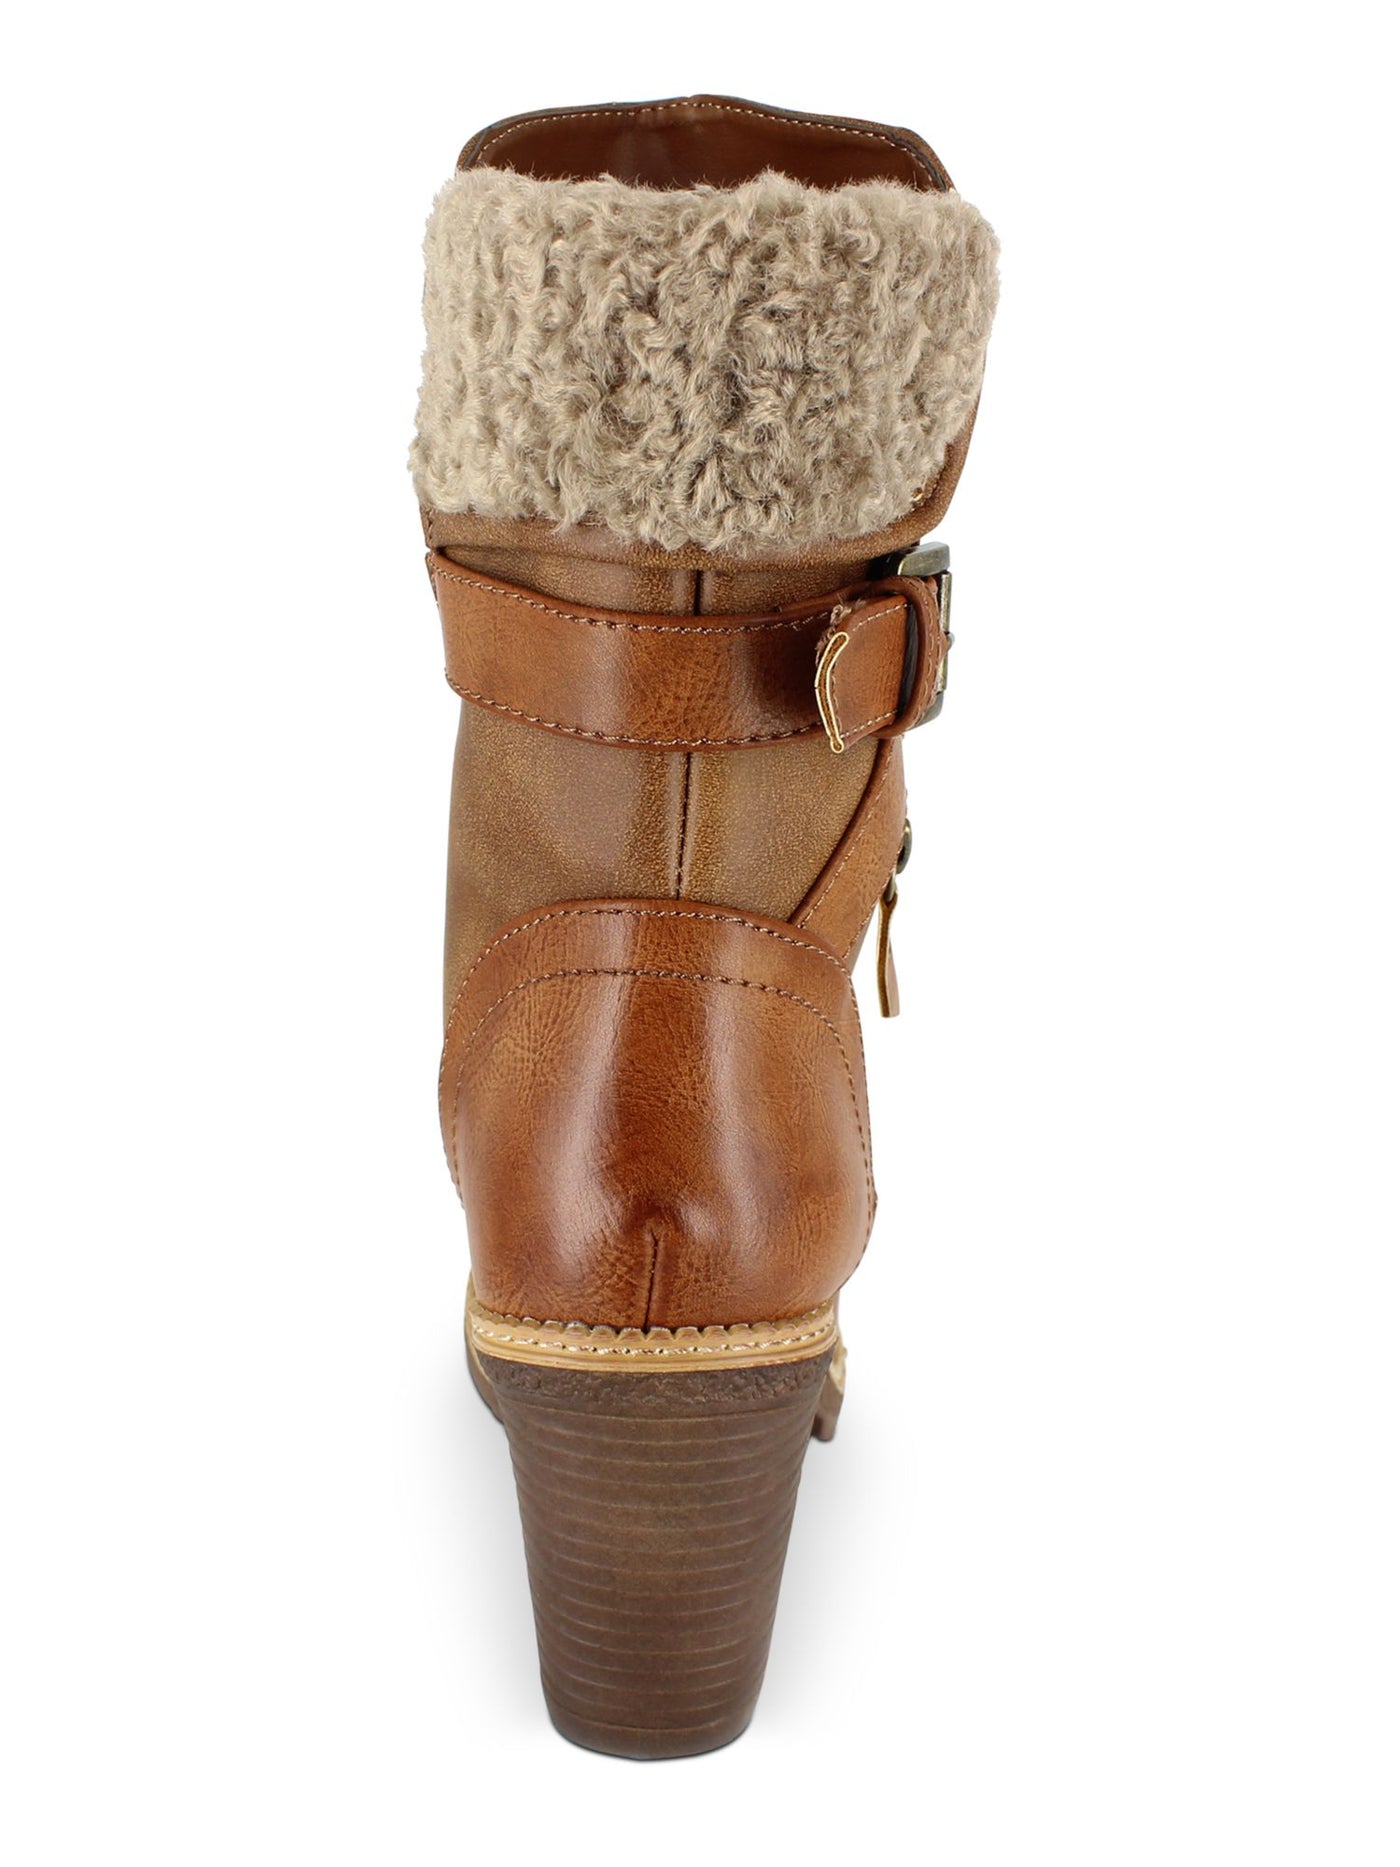 ZIGI SOHO Womens Brown Buckle Accent Zipper Accent Round Toe Block Heel Zip-Up Heeled Boots 6.5